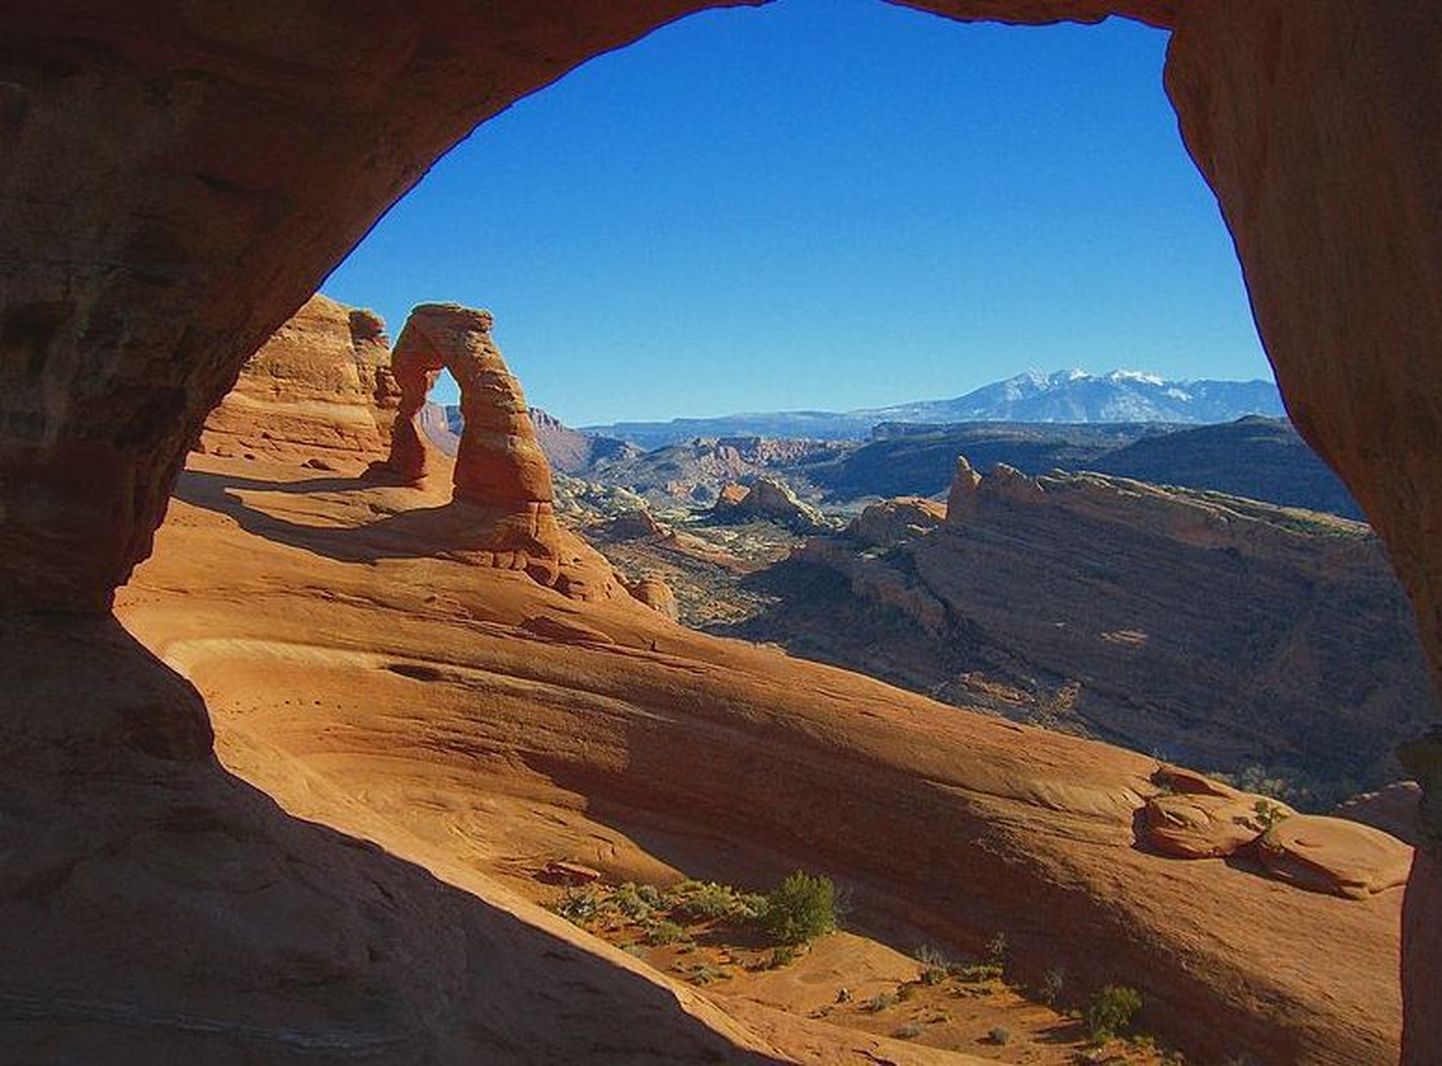 Ameeriklase Daniel Suelo põhikoduks on Utah` osariigis Archesi rahvuspargis asuv koobas, mille pikkus on 60 meetrit ning kõrgus 15 meetrit